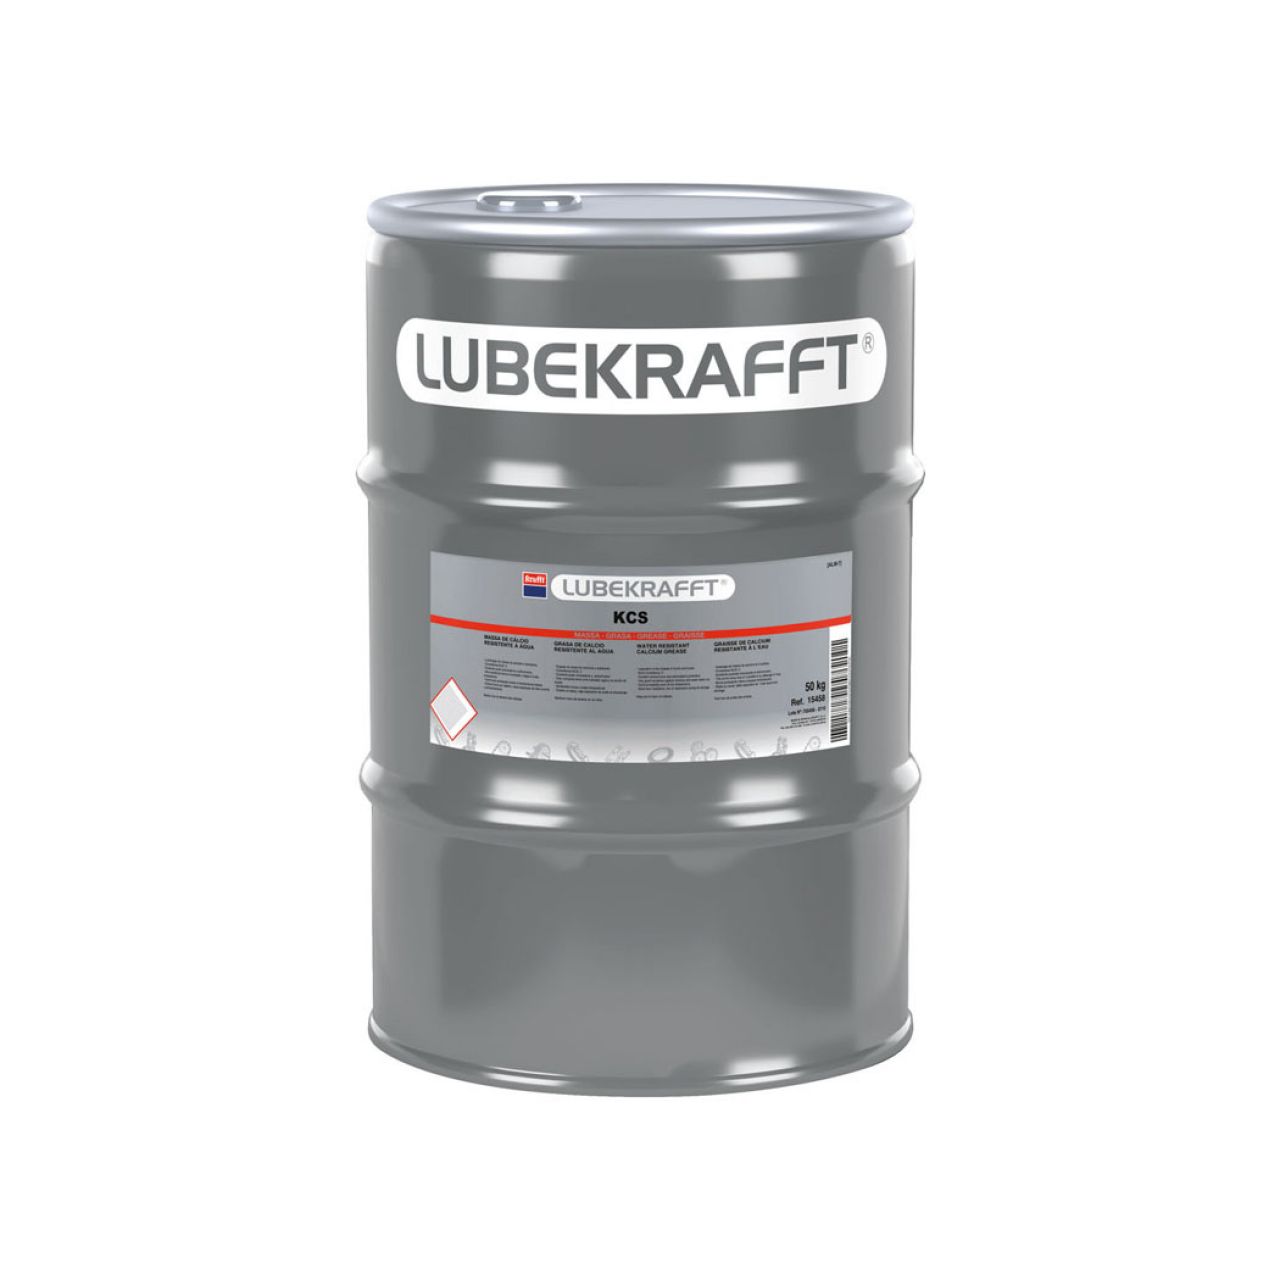 Lubekrafft® Grasa Kcs 50 kg Metal